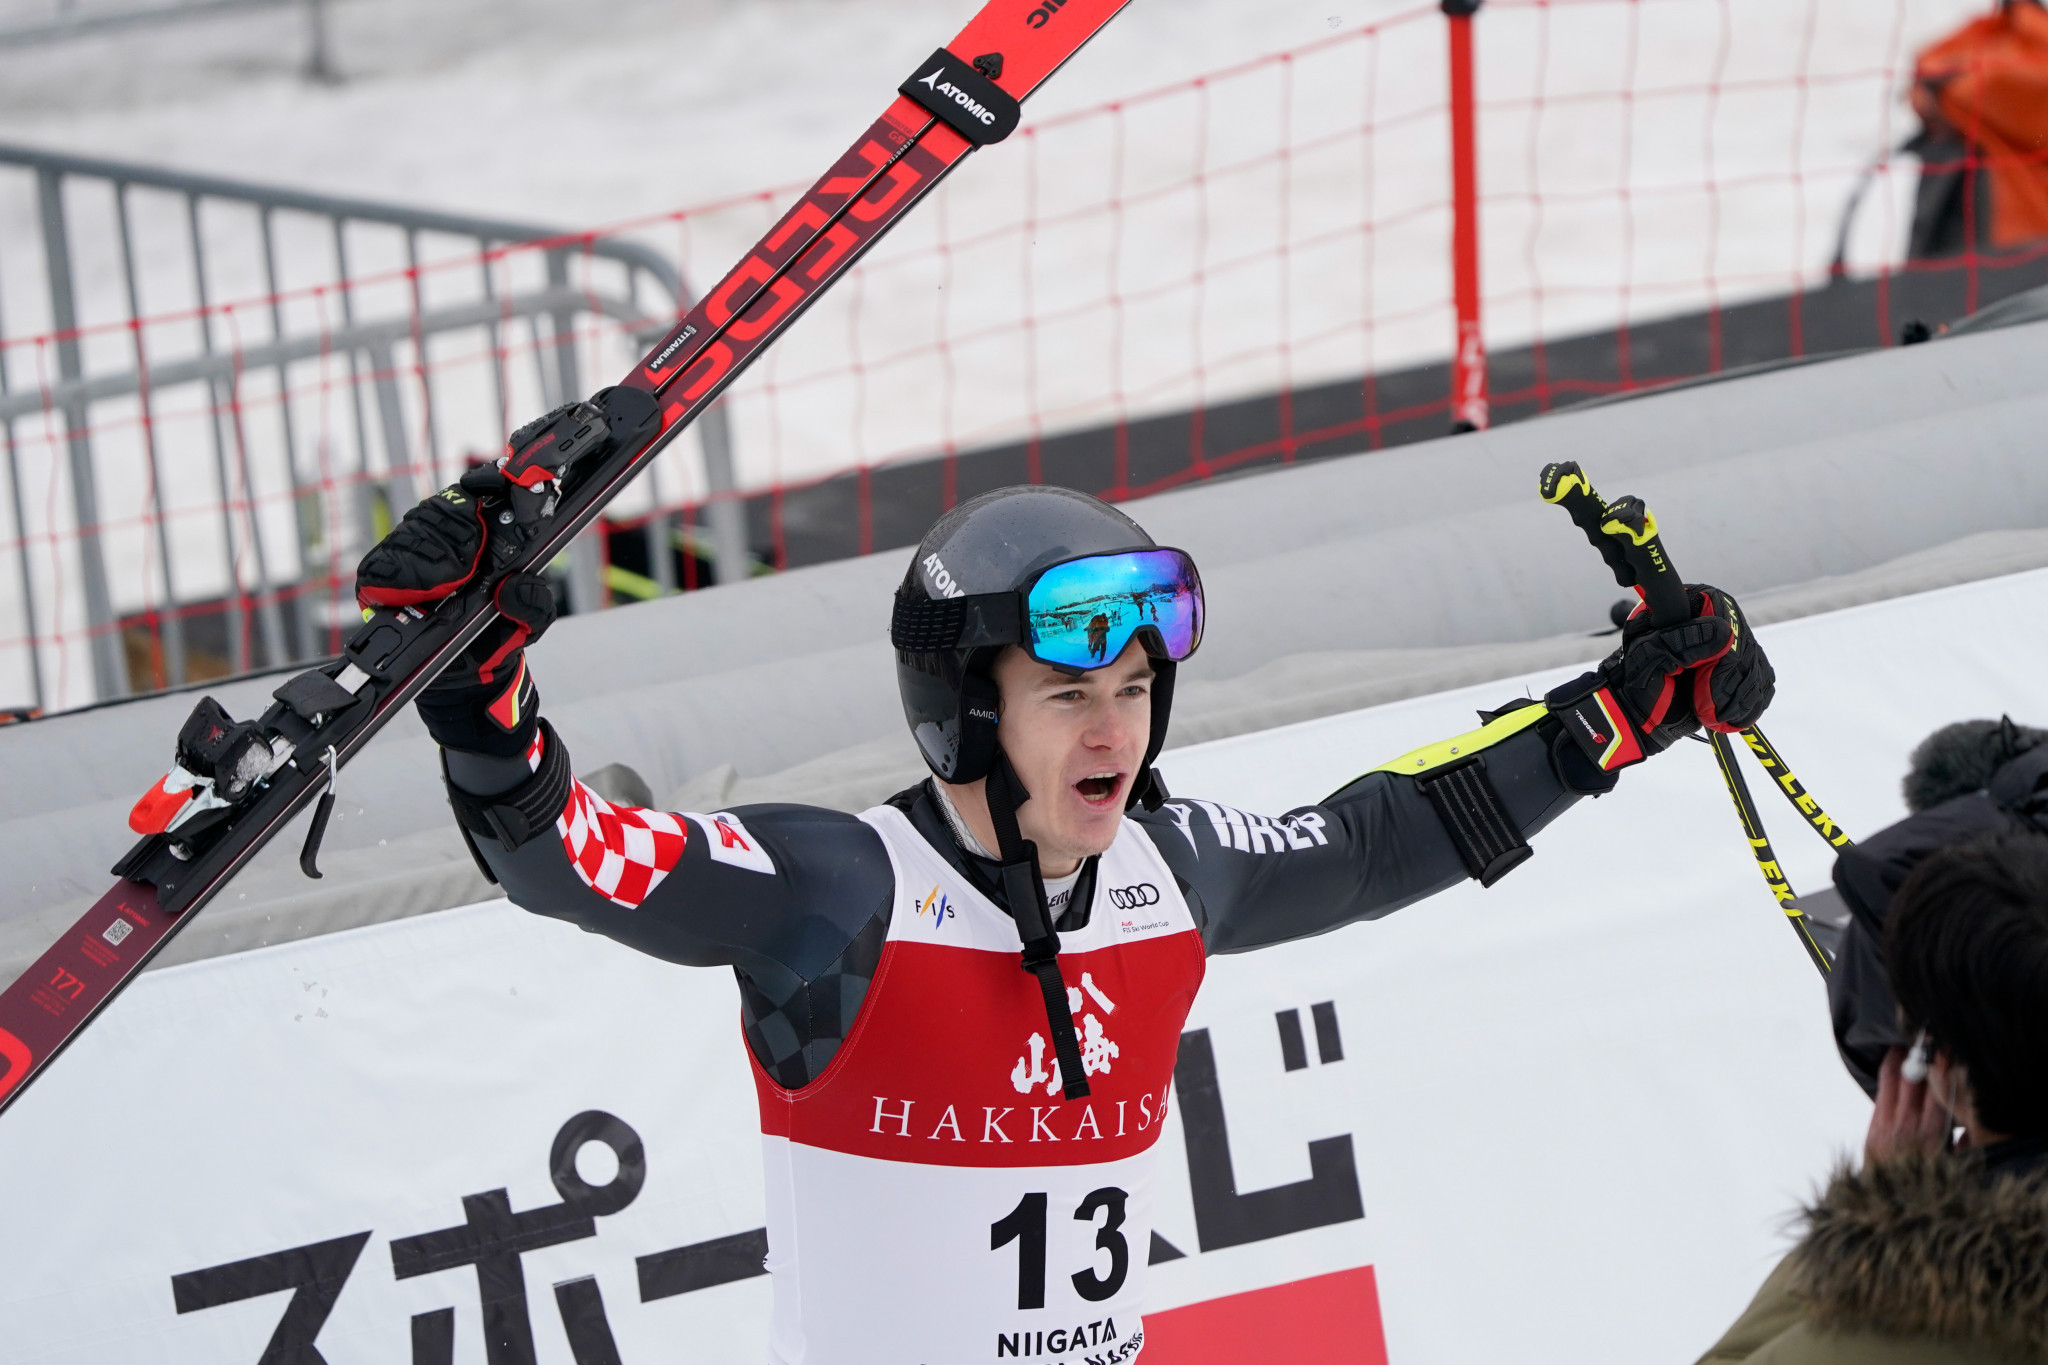 Zubčić clinches first Croatian FIS Alpine Ski World Cup giant slalom win